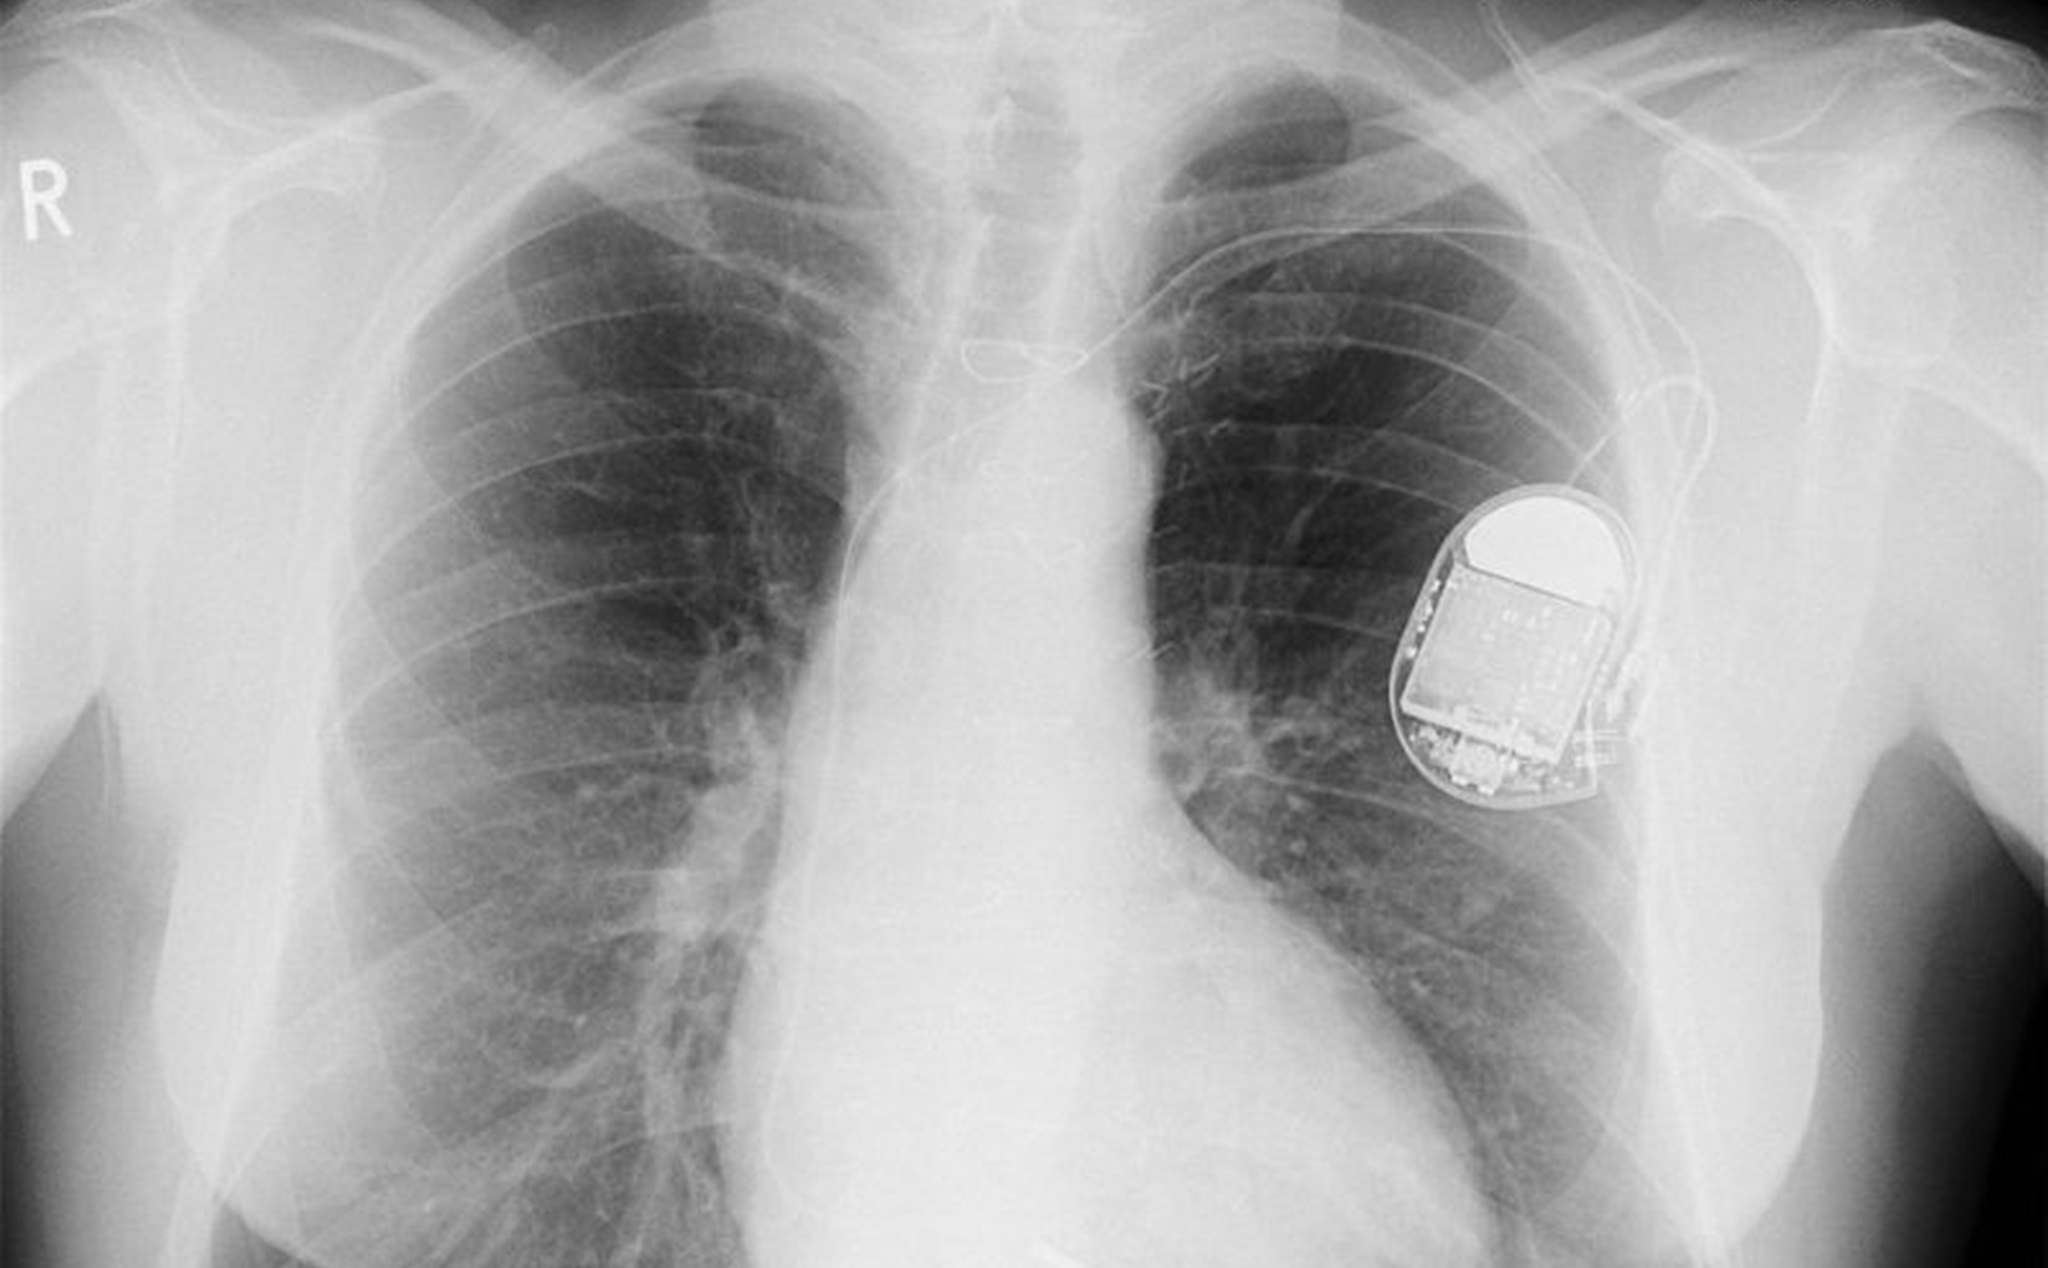 Lỗi nghiêm trọng cho phép hacker kiểm soát máy khử rung tim trong cơ thể bệnh nhân